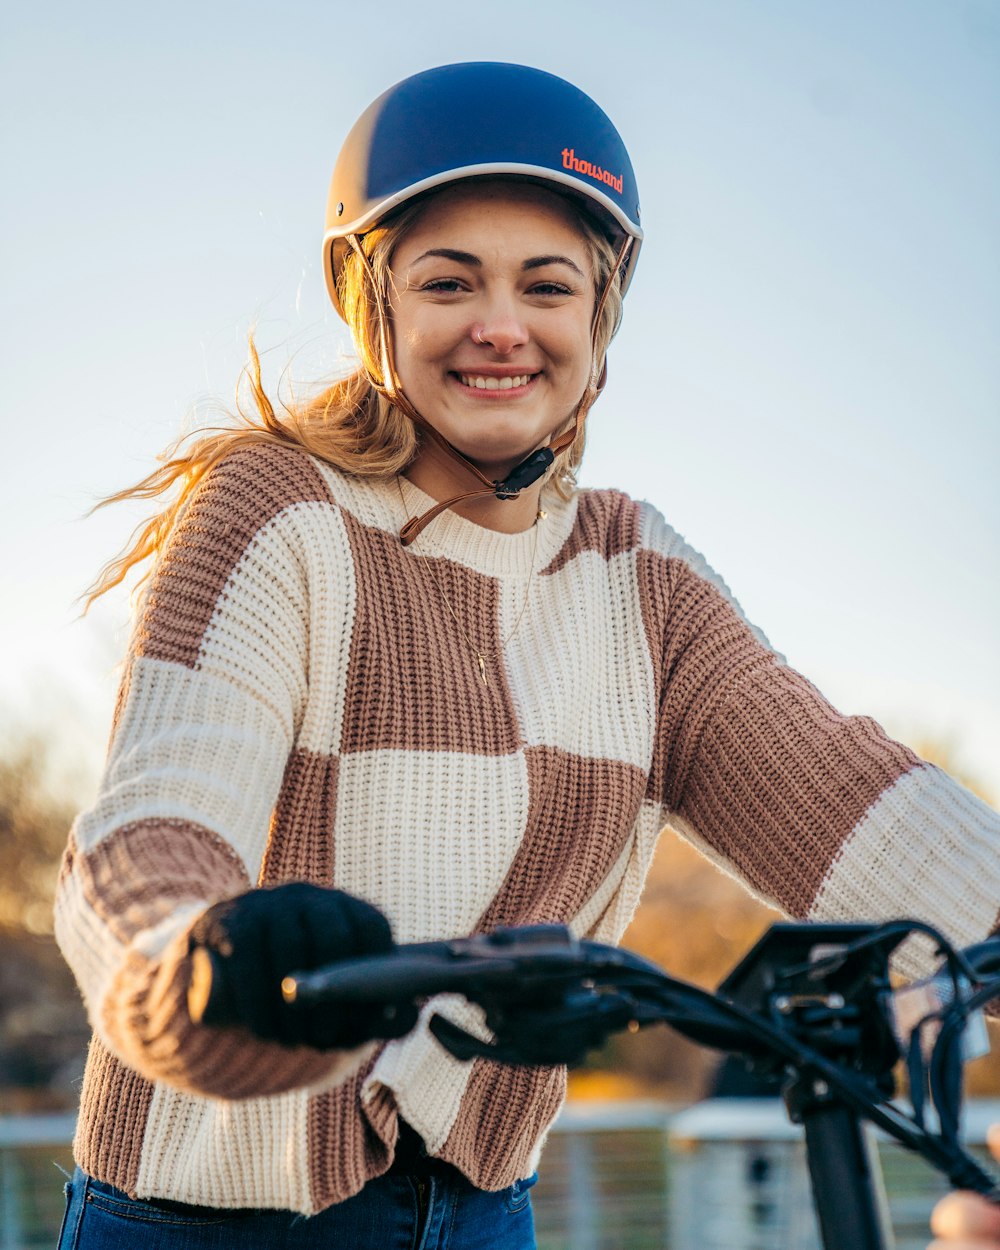 a woman wearing a helmet is riding a bike